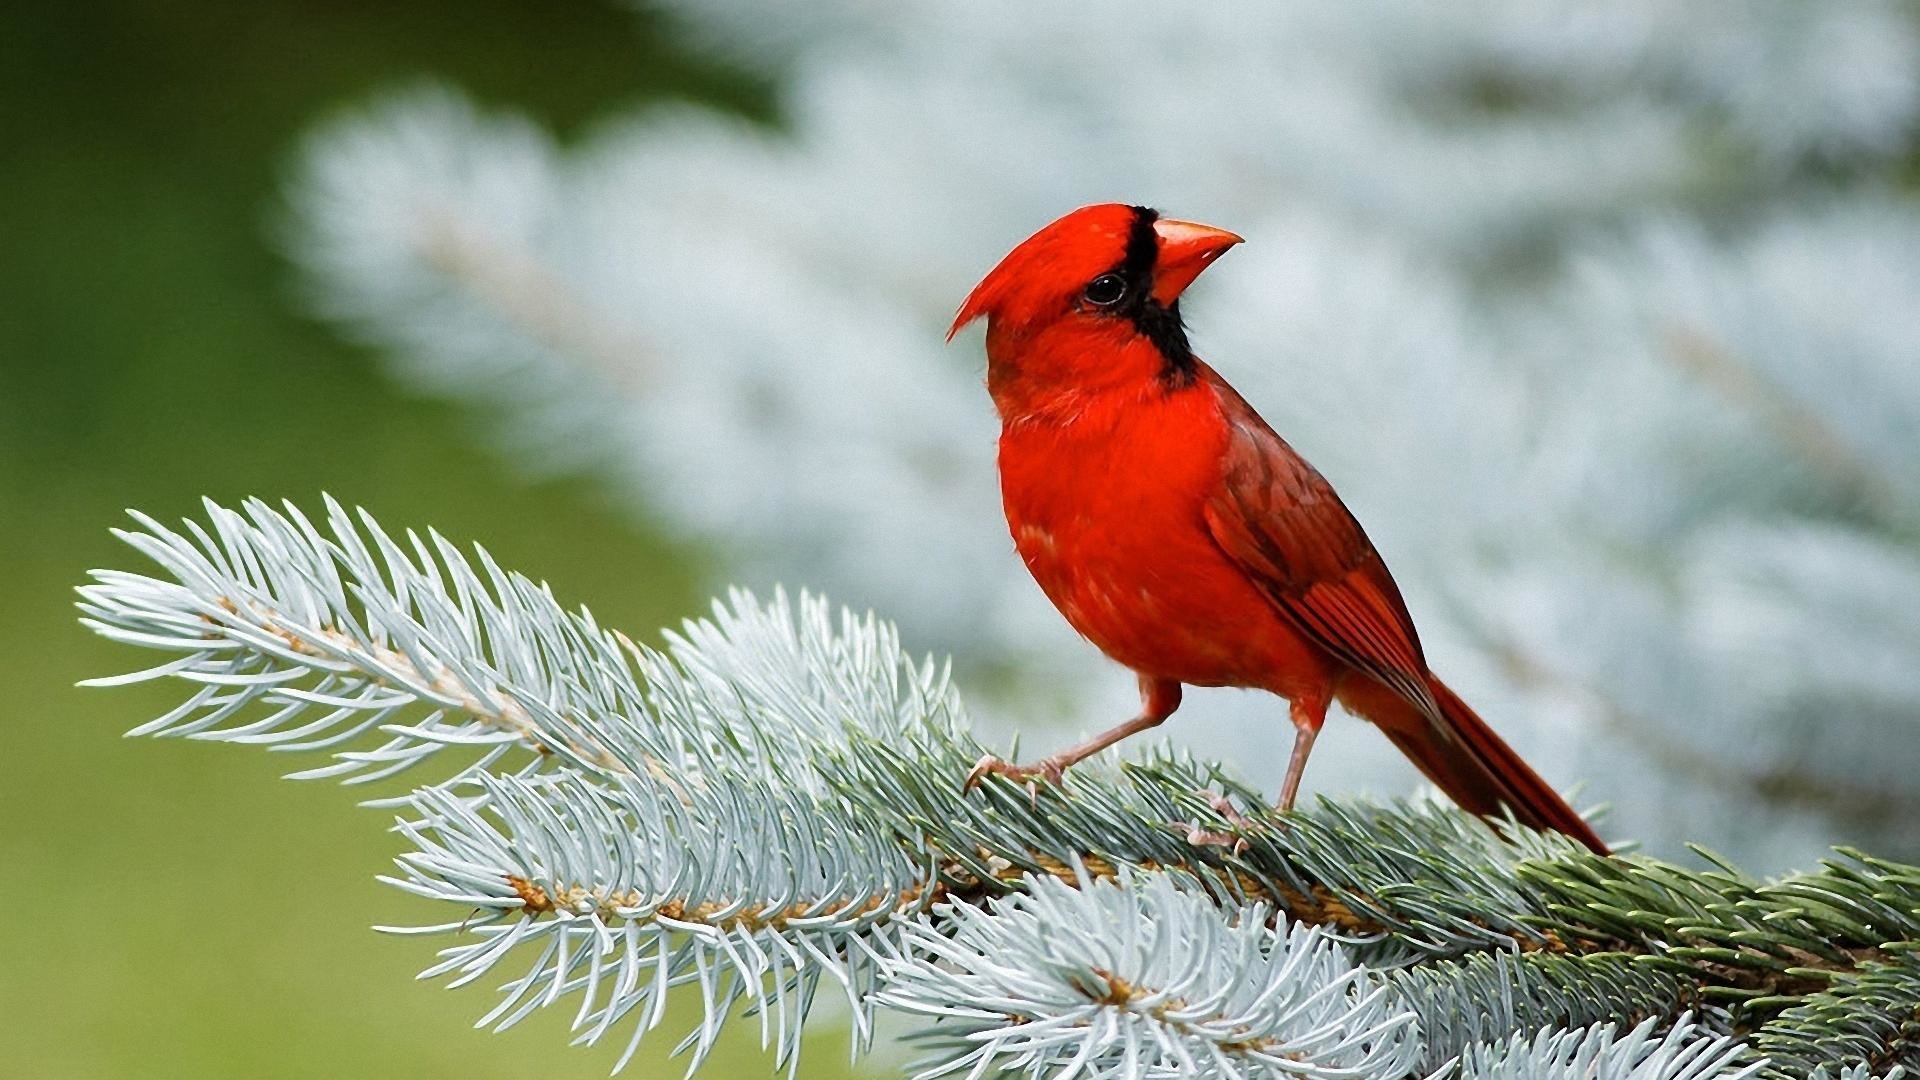 Red Cardinal Birds 1080p HD Wallpaper 1920×1080